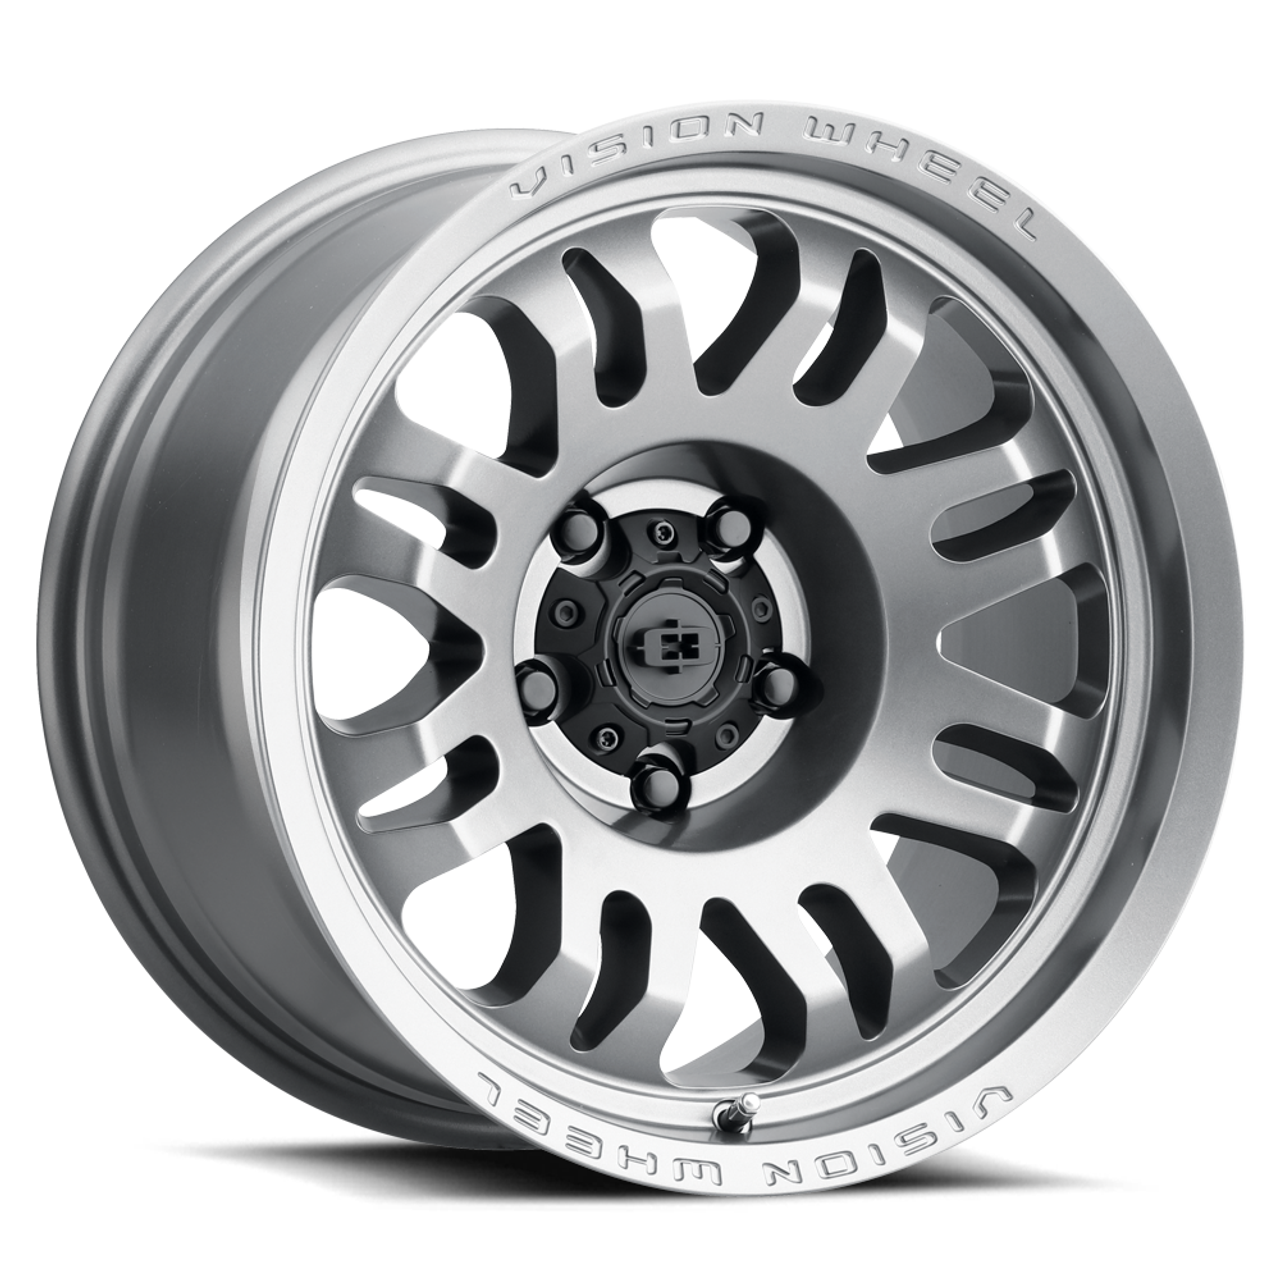 18" Vision 409 Inferno Satin Grey 6x4.5 Wheel 0mm Rim For Dodge Nissan Suzuki